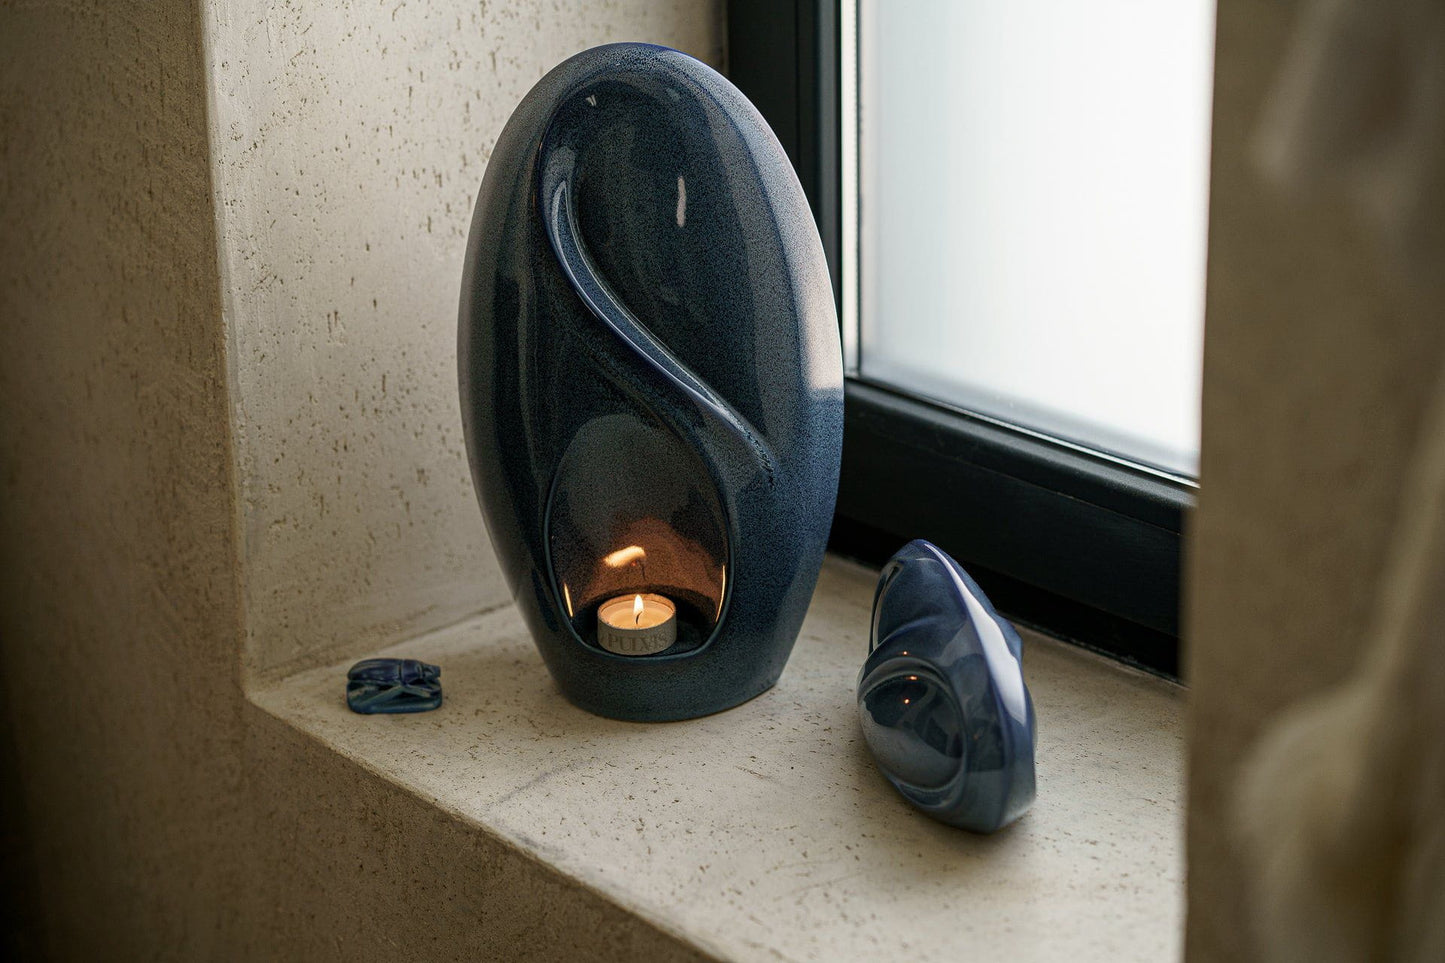 
                  
                    Pulvis Art Urns Adult Size Urn Eternity Handmade Cremation Urn for Ashes - Large | Blue Melange | Ceramic
                  
                